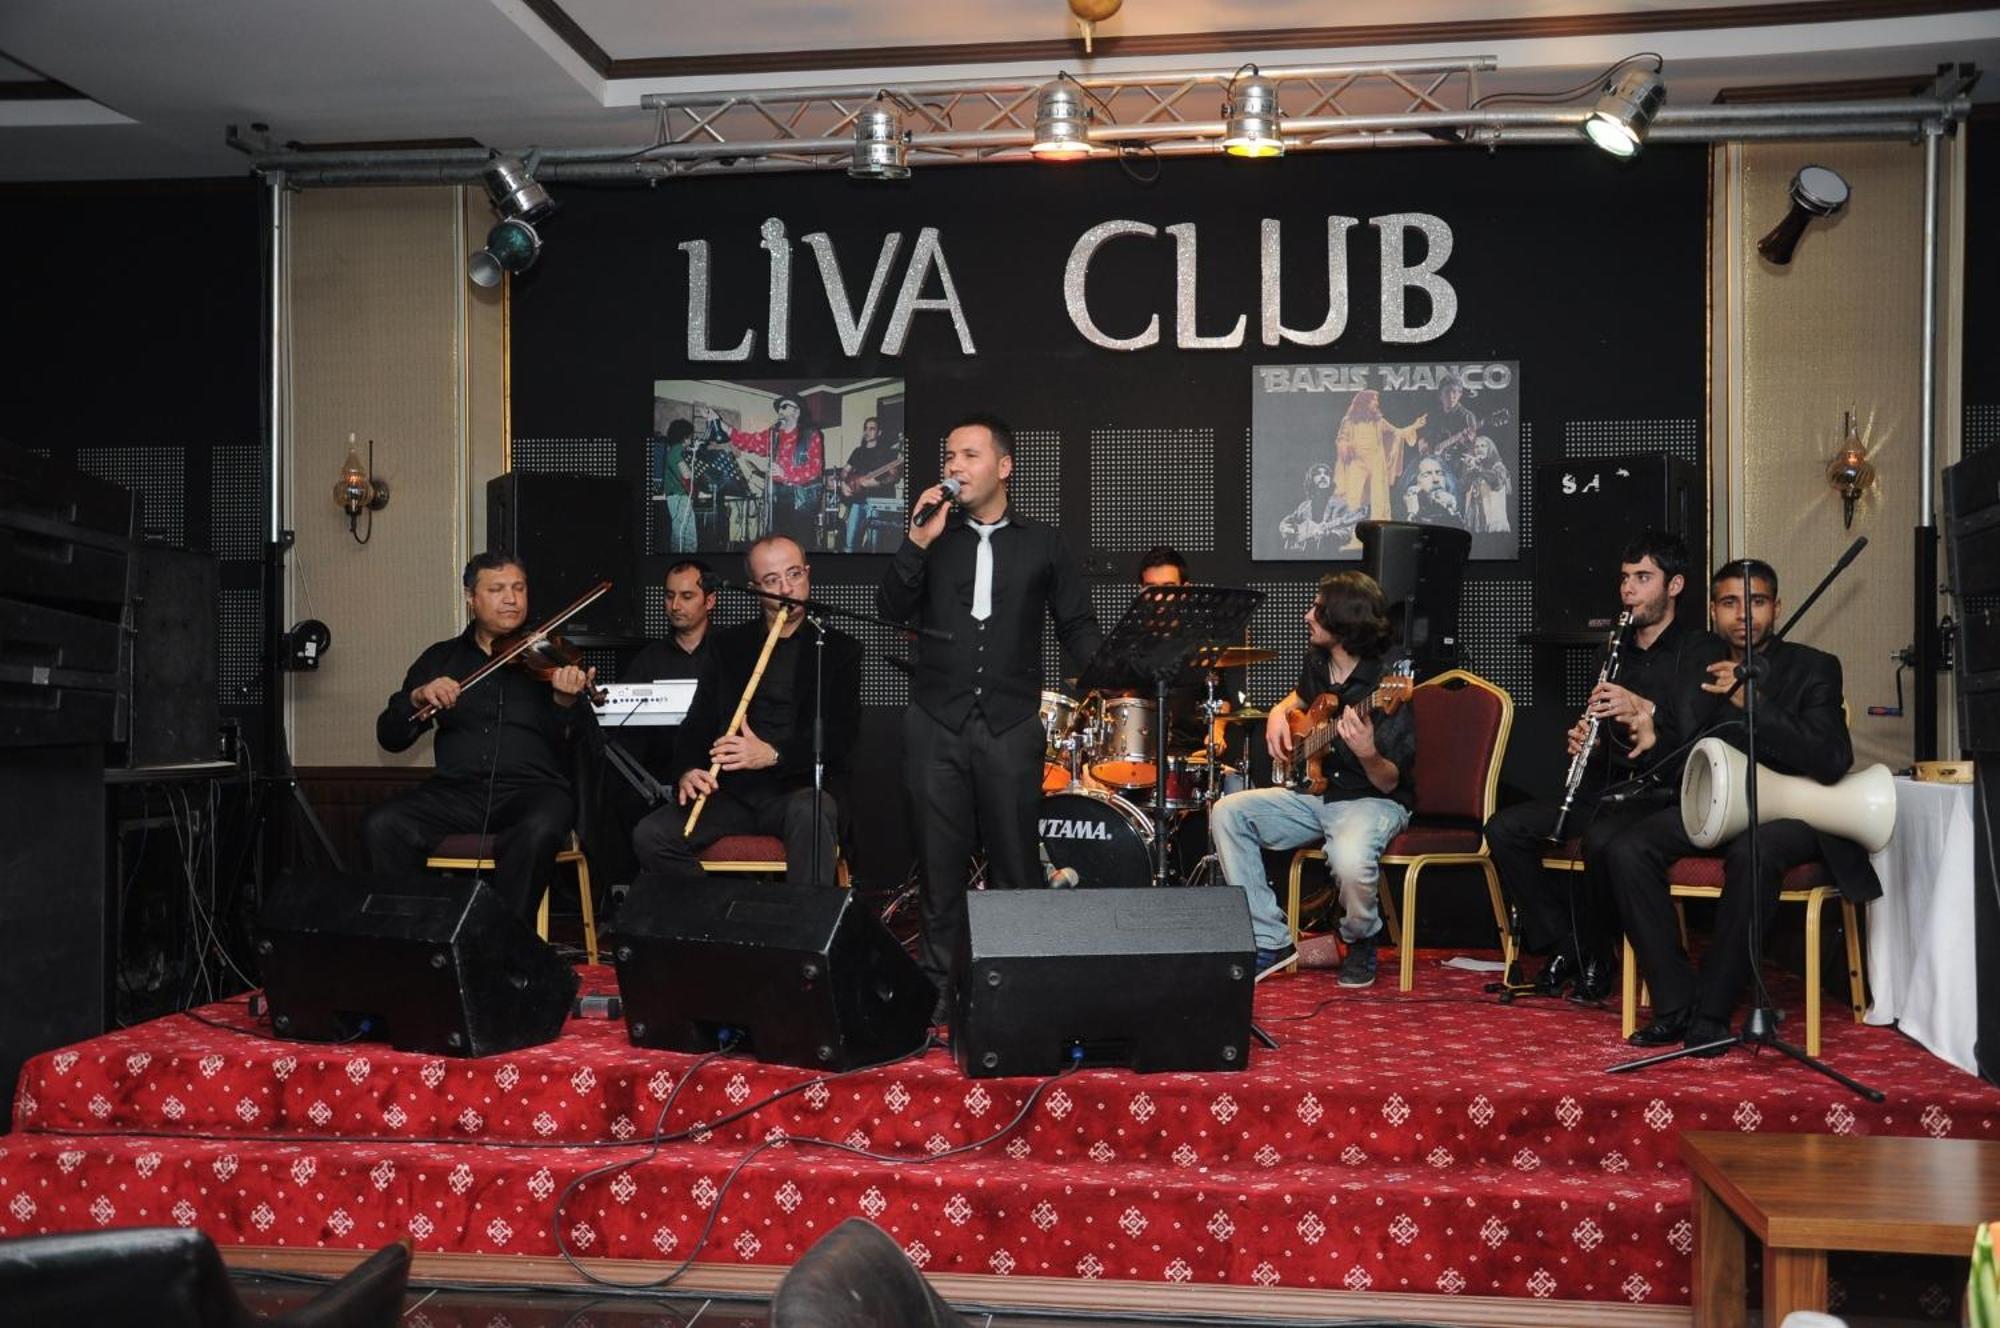 Yucesoy Liva Hotel Spa & Convention Center Mersin Mersin  Kültér fotó